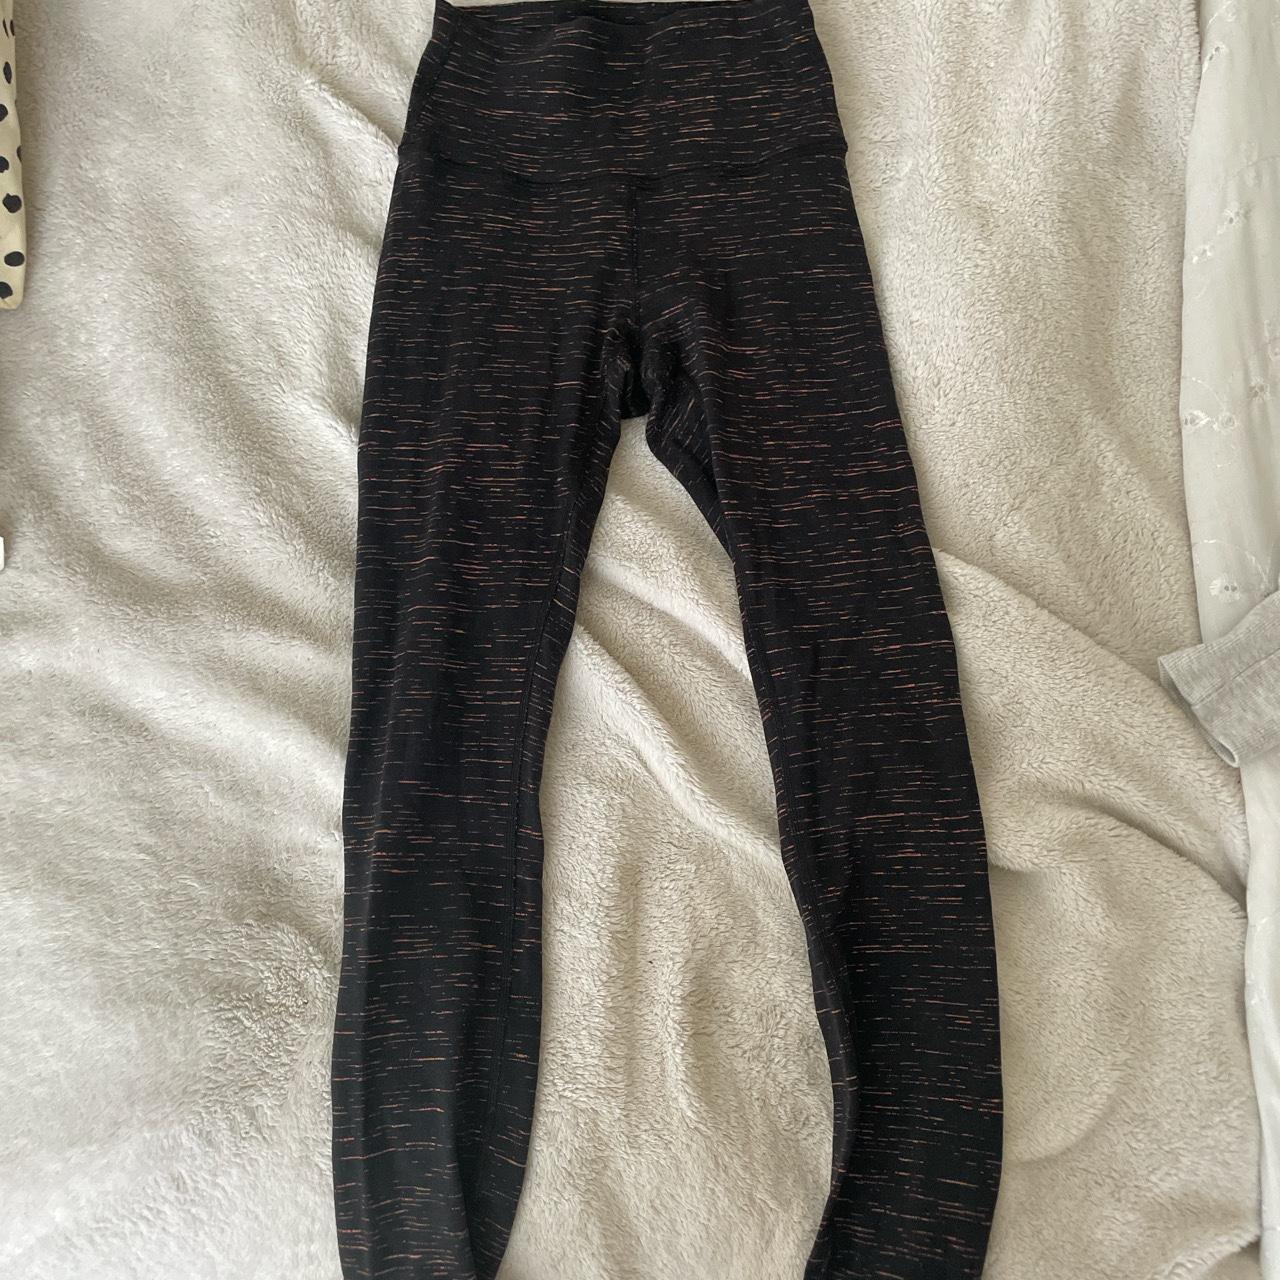 Lululemon black patterned leggings size 0 wunder - Depop